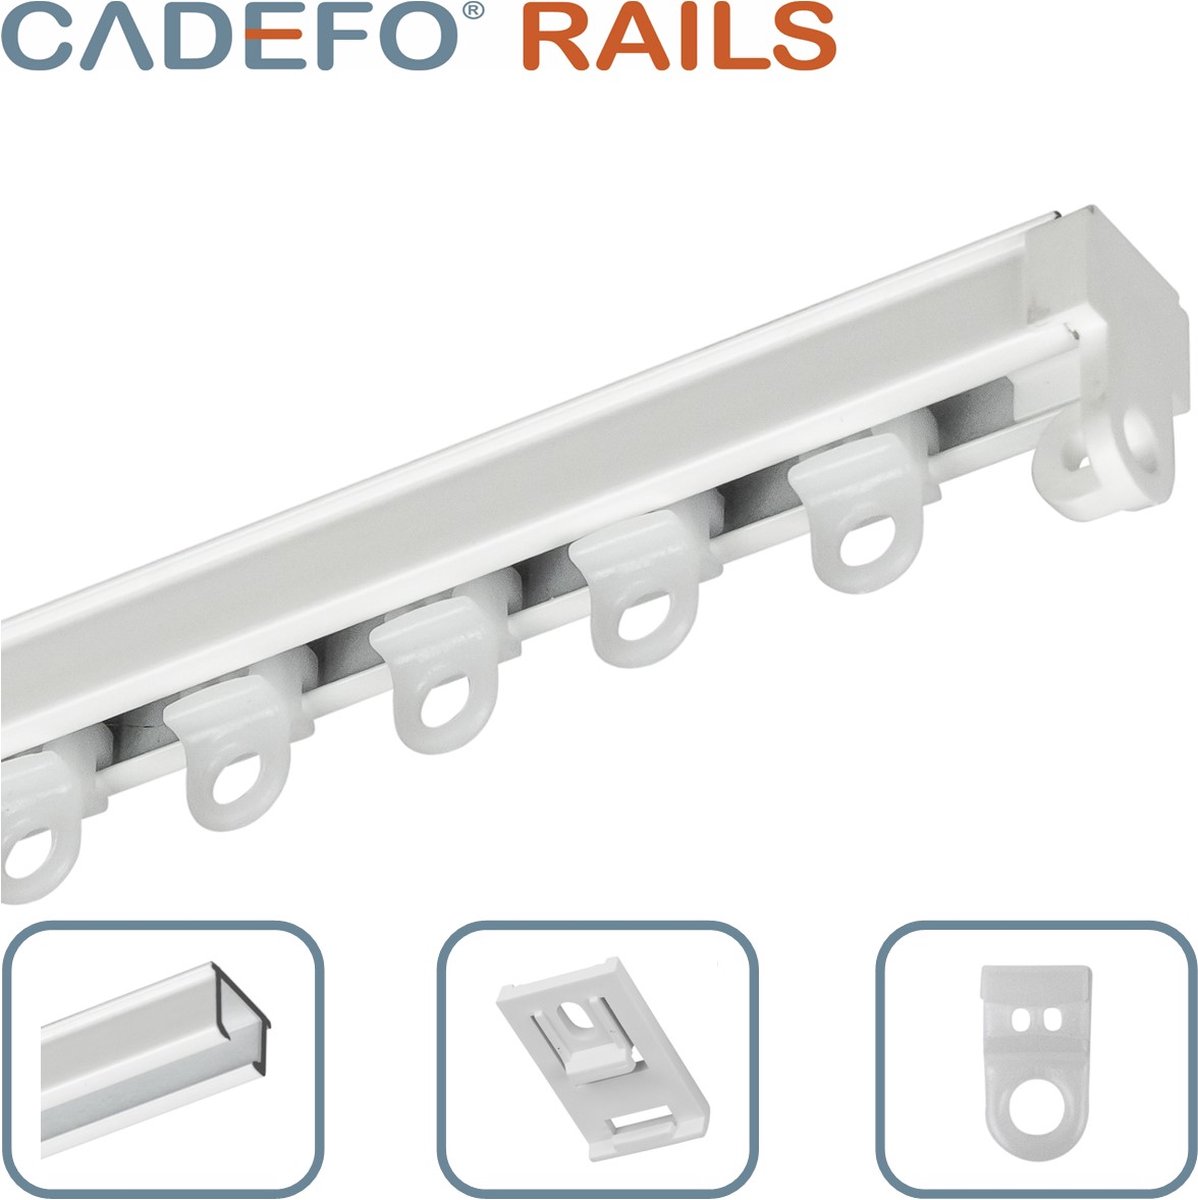 CADEFO RAILS (151 - 200 cm) Gordijnrails - Compleet op maat! - UIT 1 STUK - Leverbaar tot 6 meter - Plafondbevestiging - Lengte 151 cm